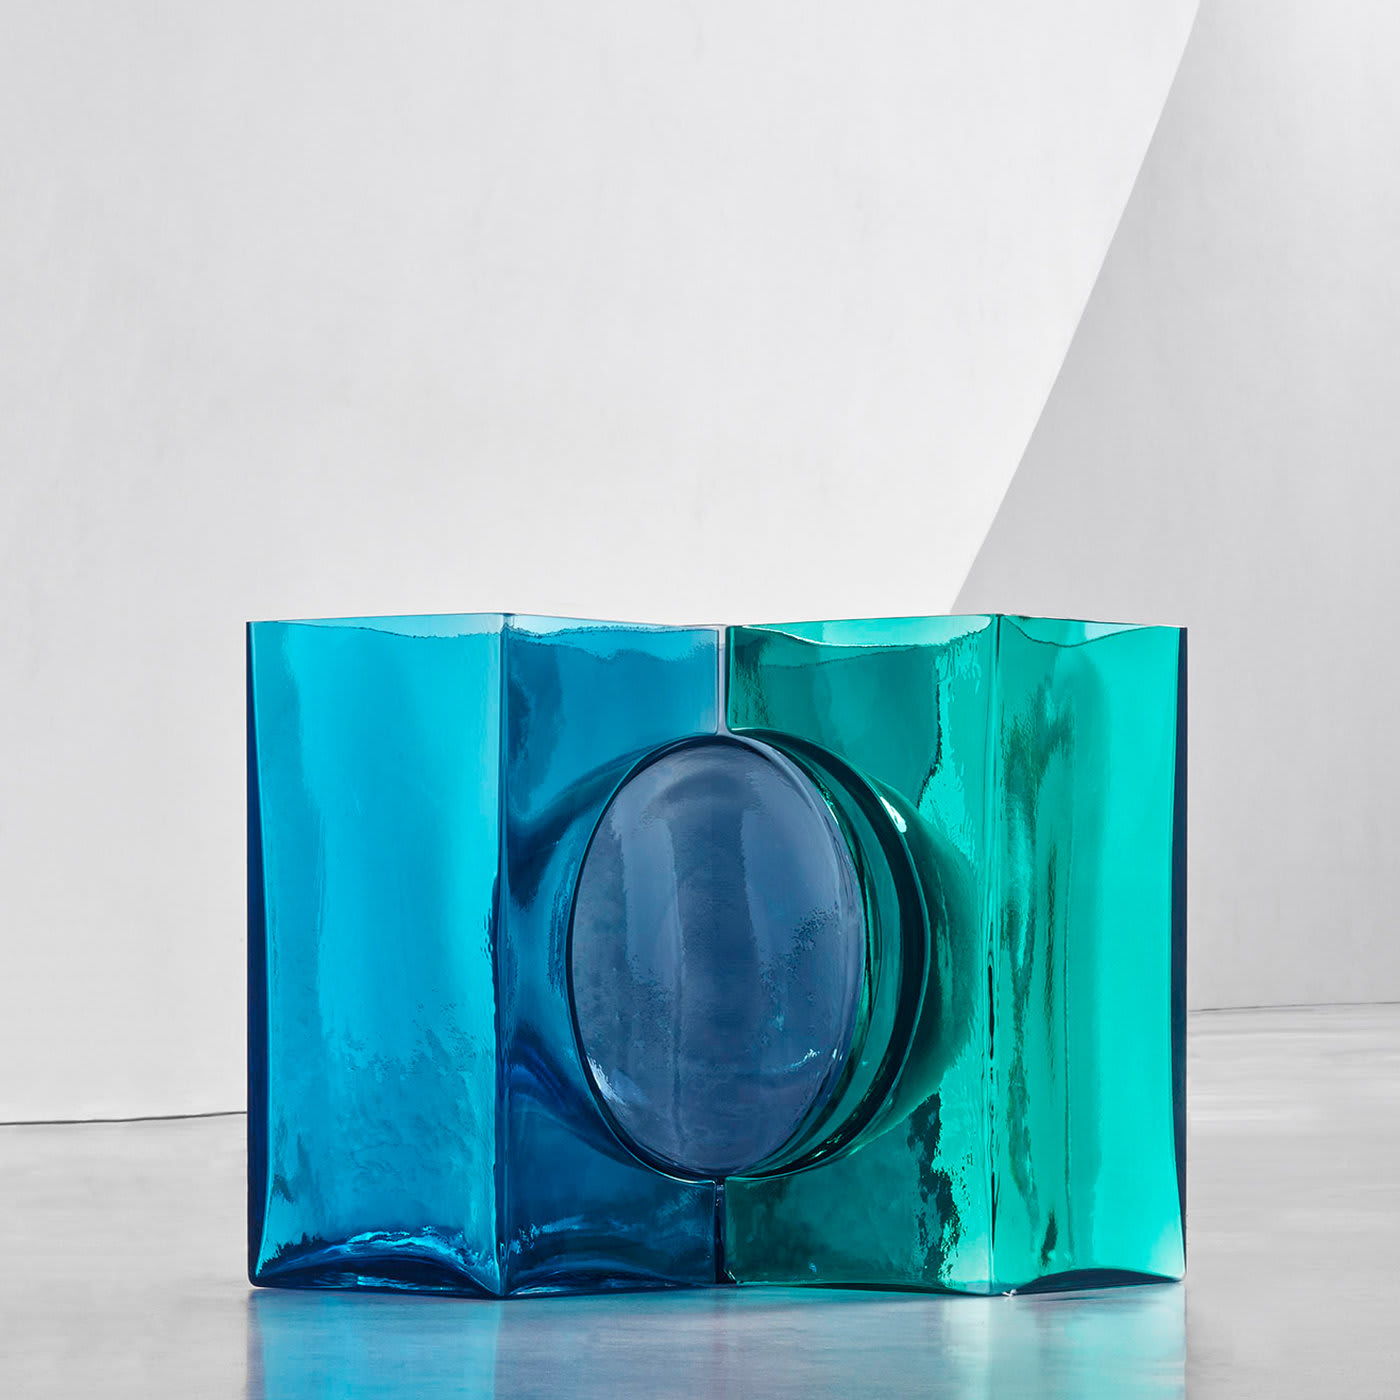 Ando Cosmos Aqua/Green Crystal Sculpture by Tadao Ando - Venini